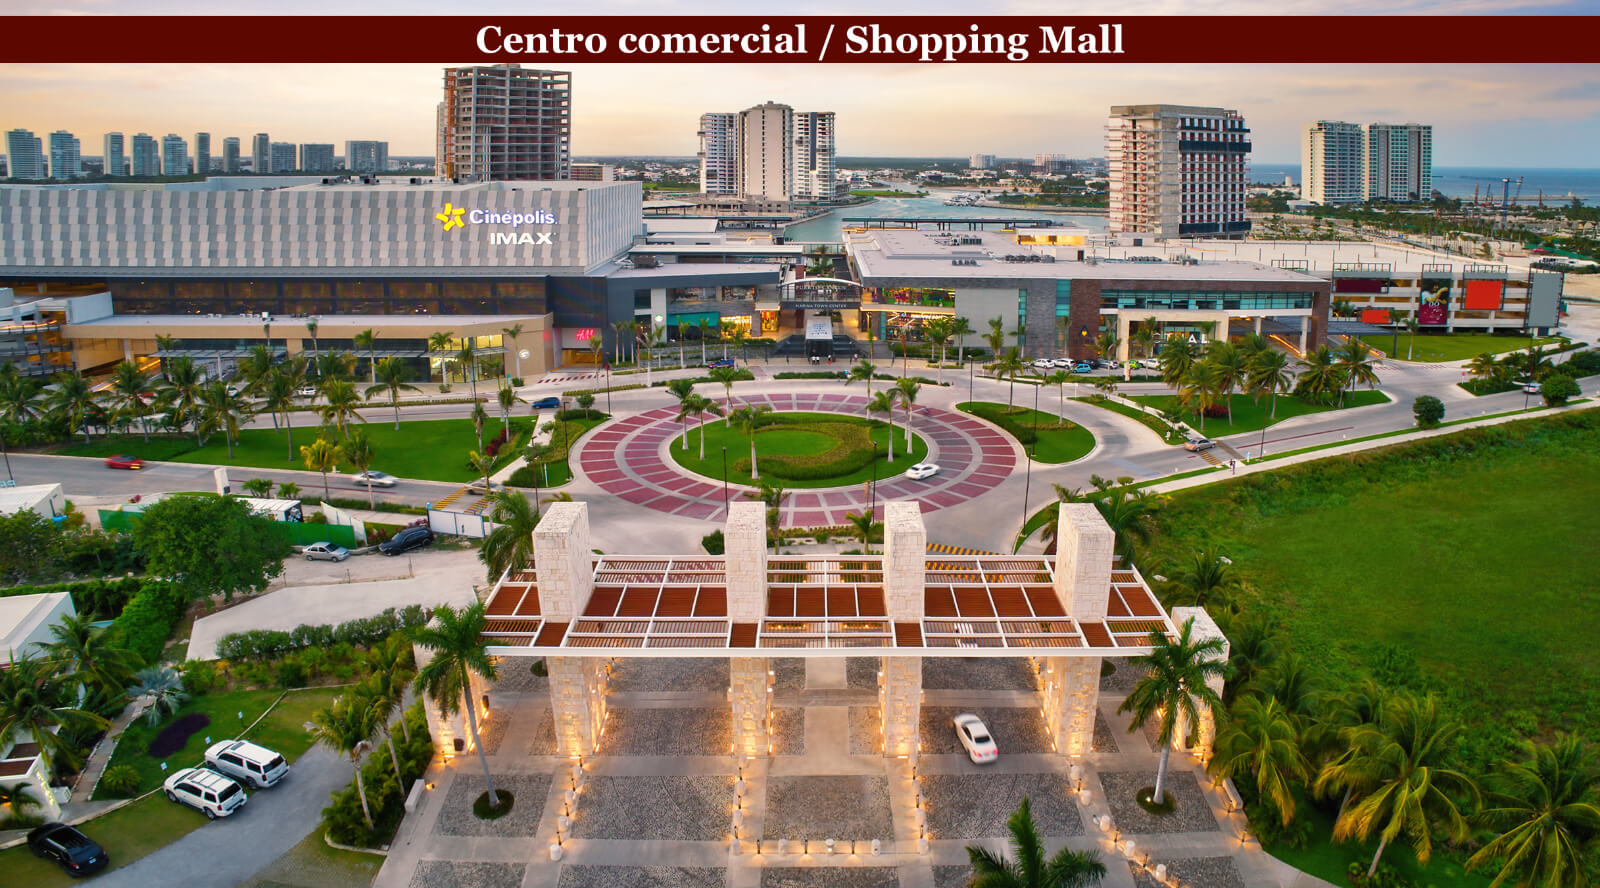 Departamento con Spa, restaurante, sky lounge, cine, concierge, area de perros y mas en venta Cancun, preconstruccion.